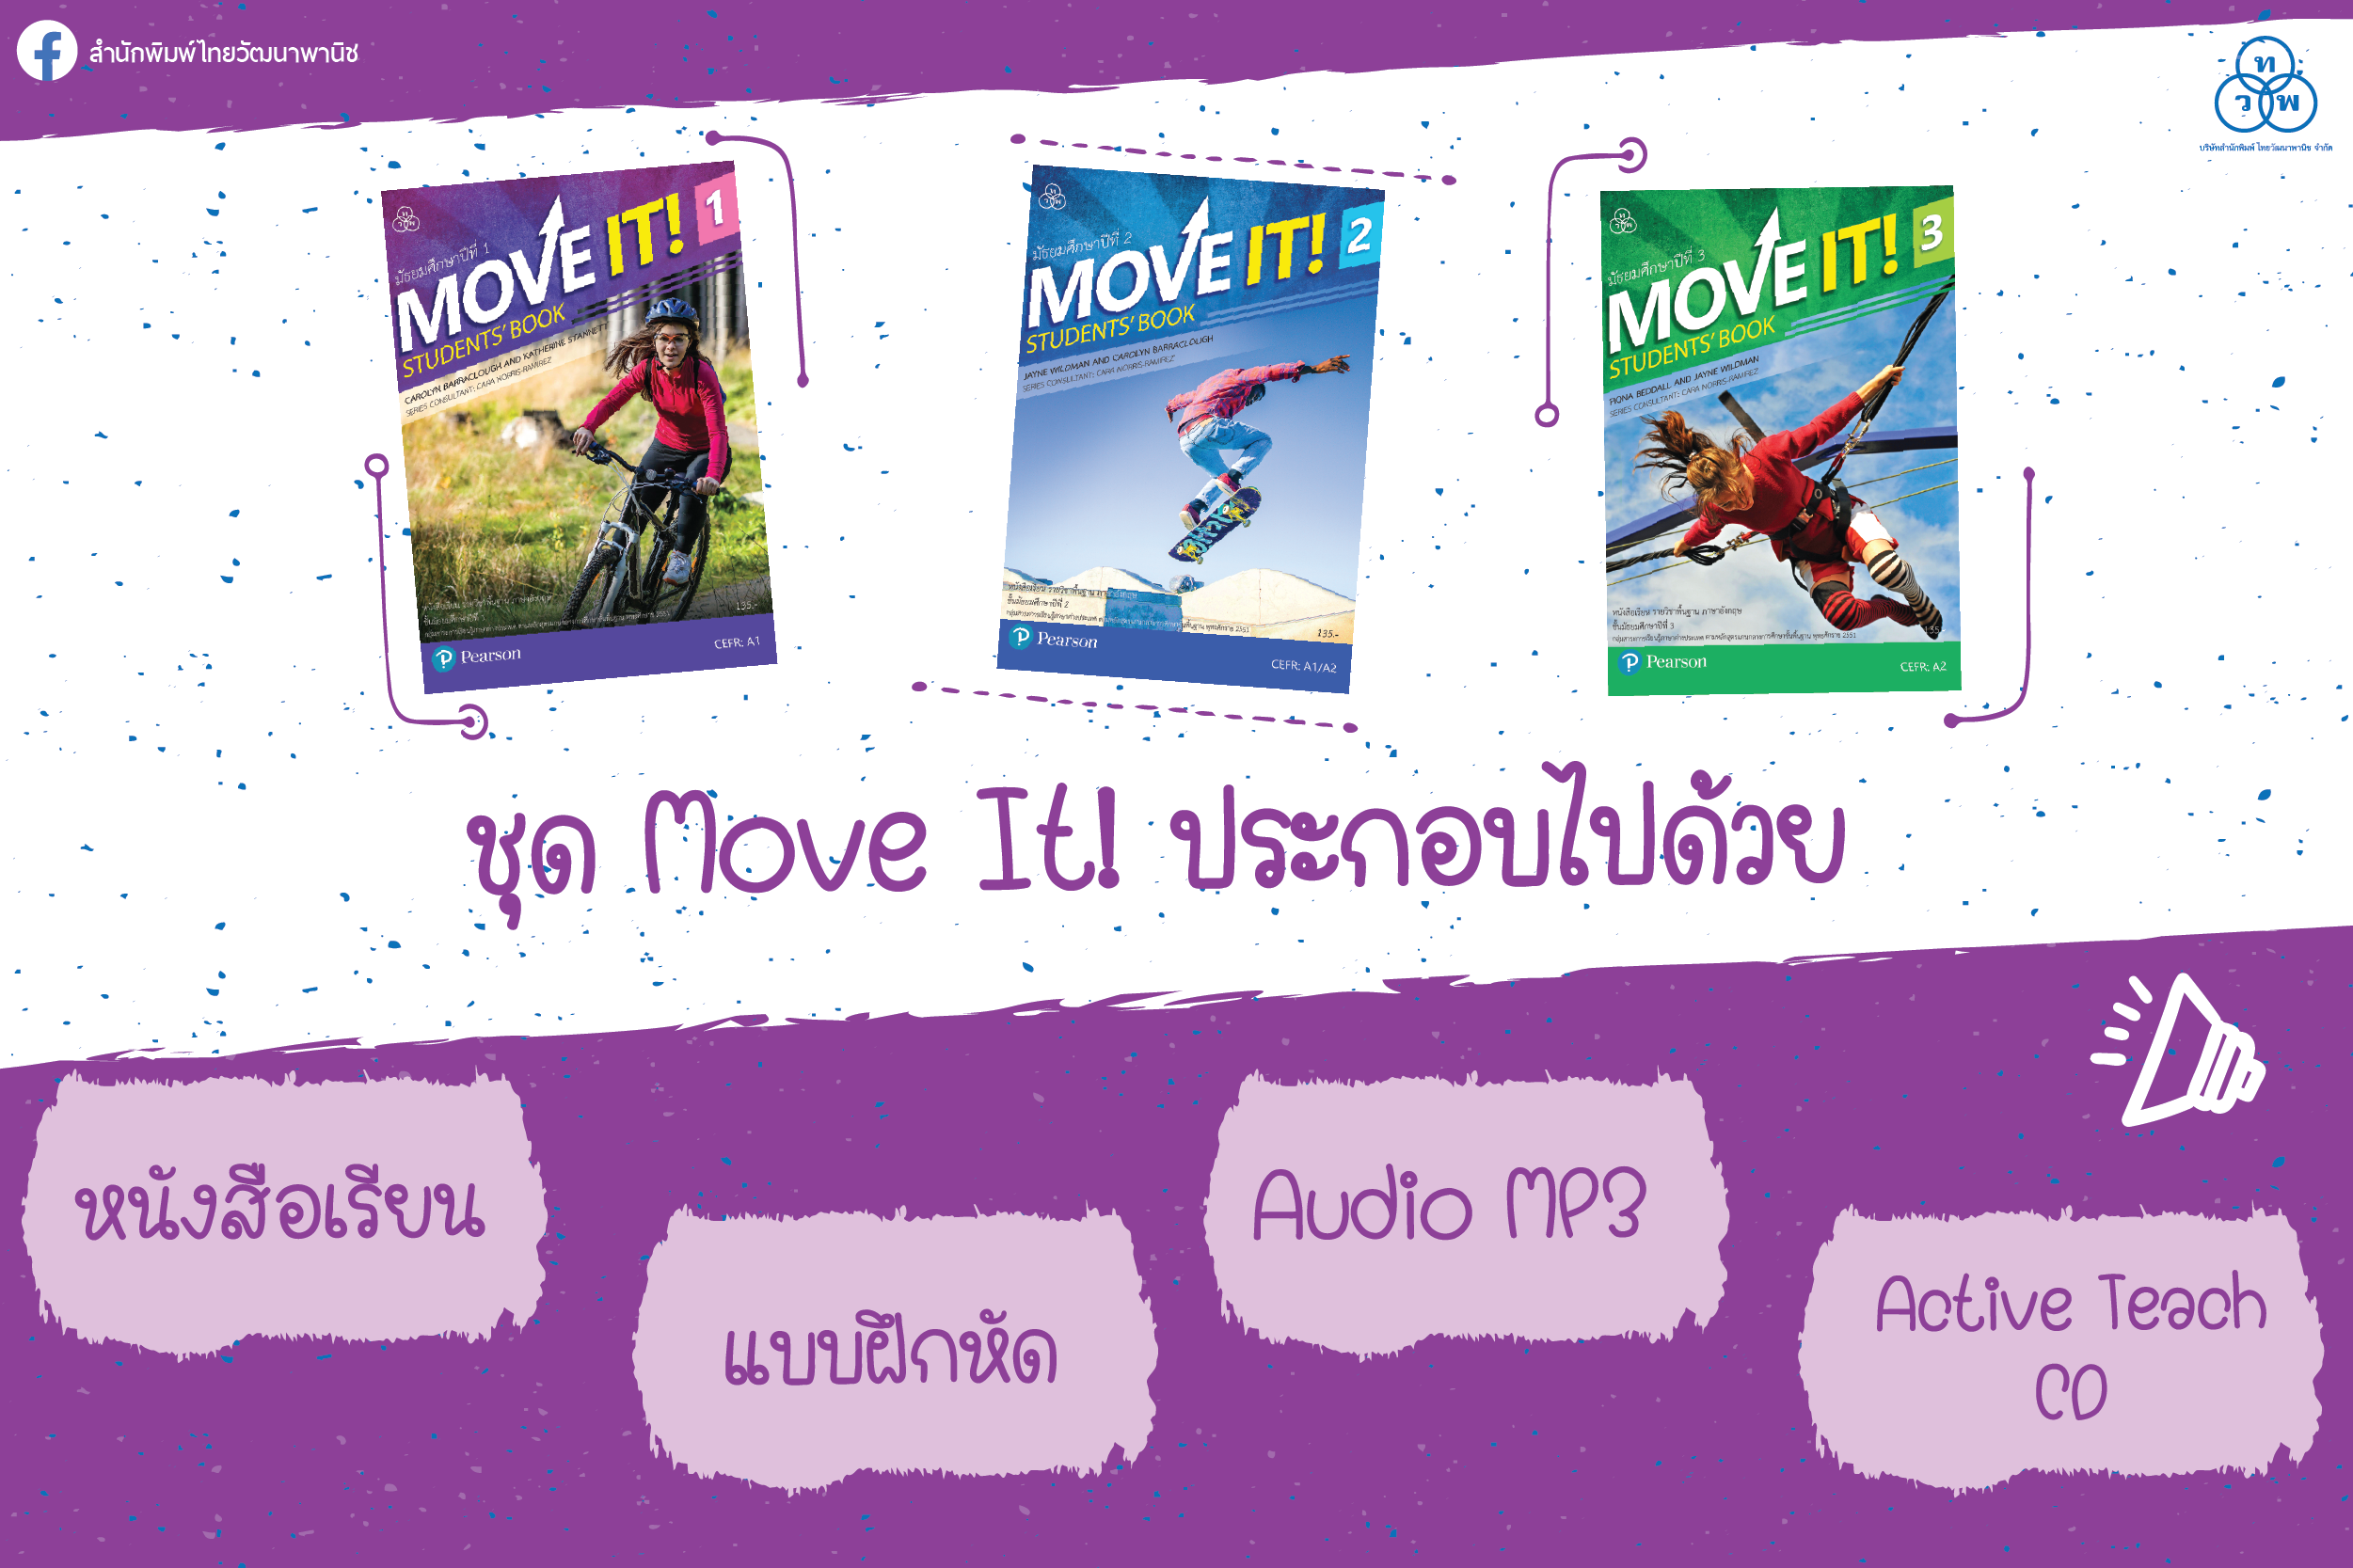 หนังสือเรียนชุด Move It! ประกอบไปด้วยอะไรบ้าง